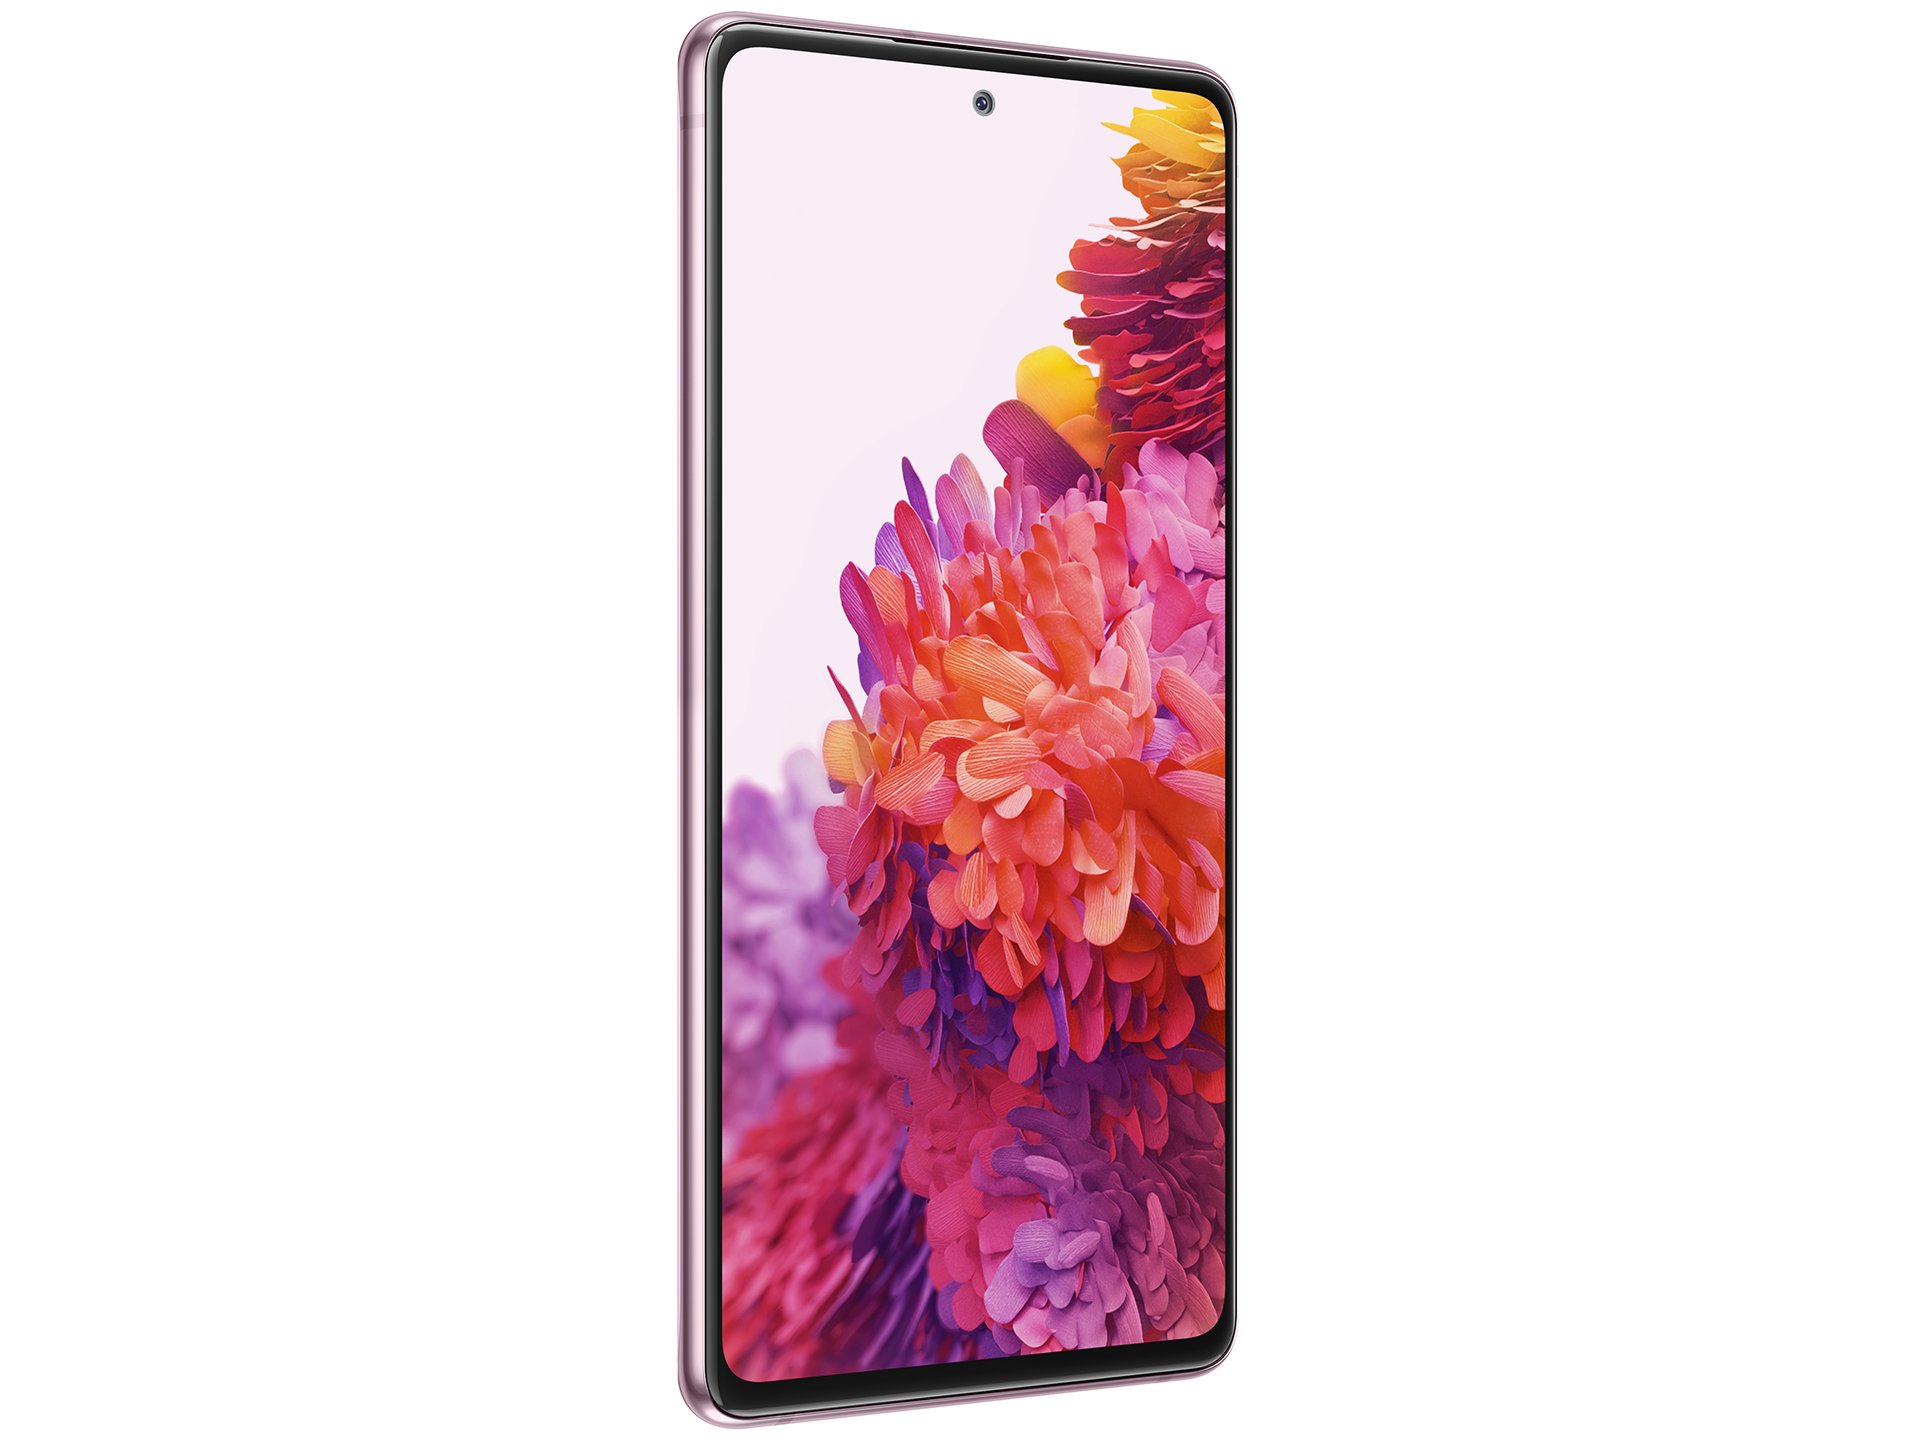 Samsung Galaxy Tab S 10 : meilleur prix, fiche technique et actualité –  Tablettes tactiles – Frandroid